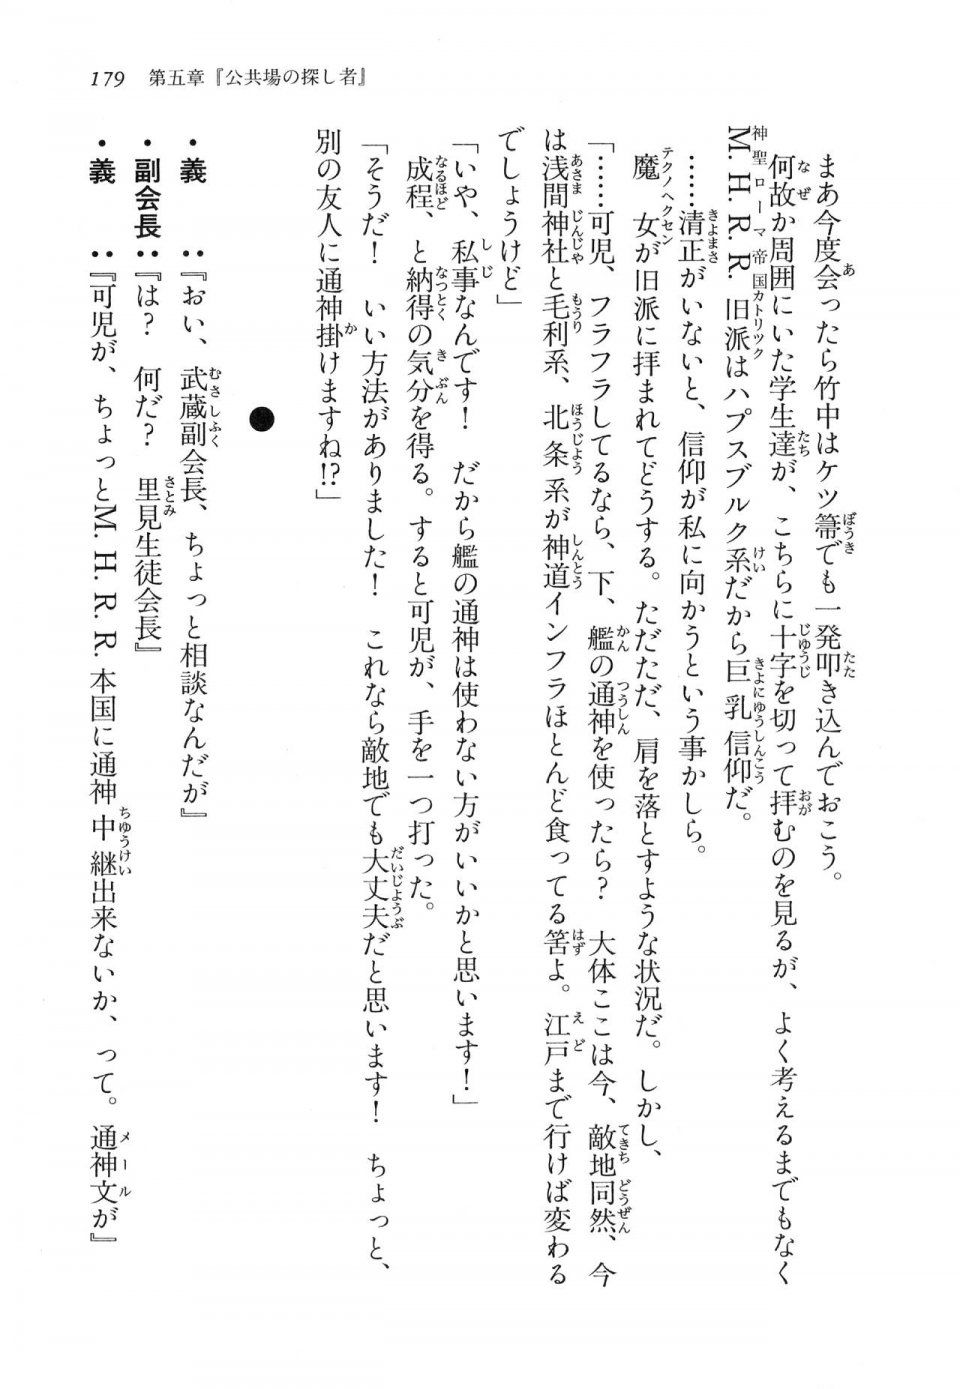 Kyoukai Senjou no Horizon LN Vol 16(7A) - Photo #179